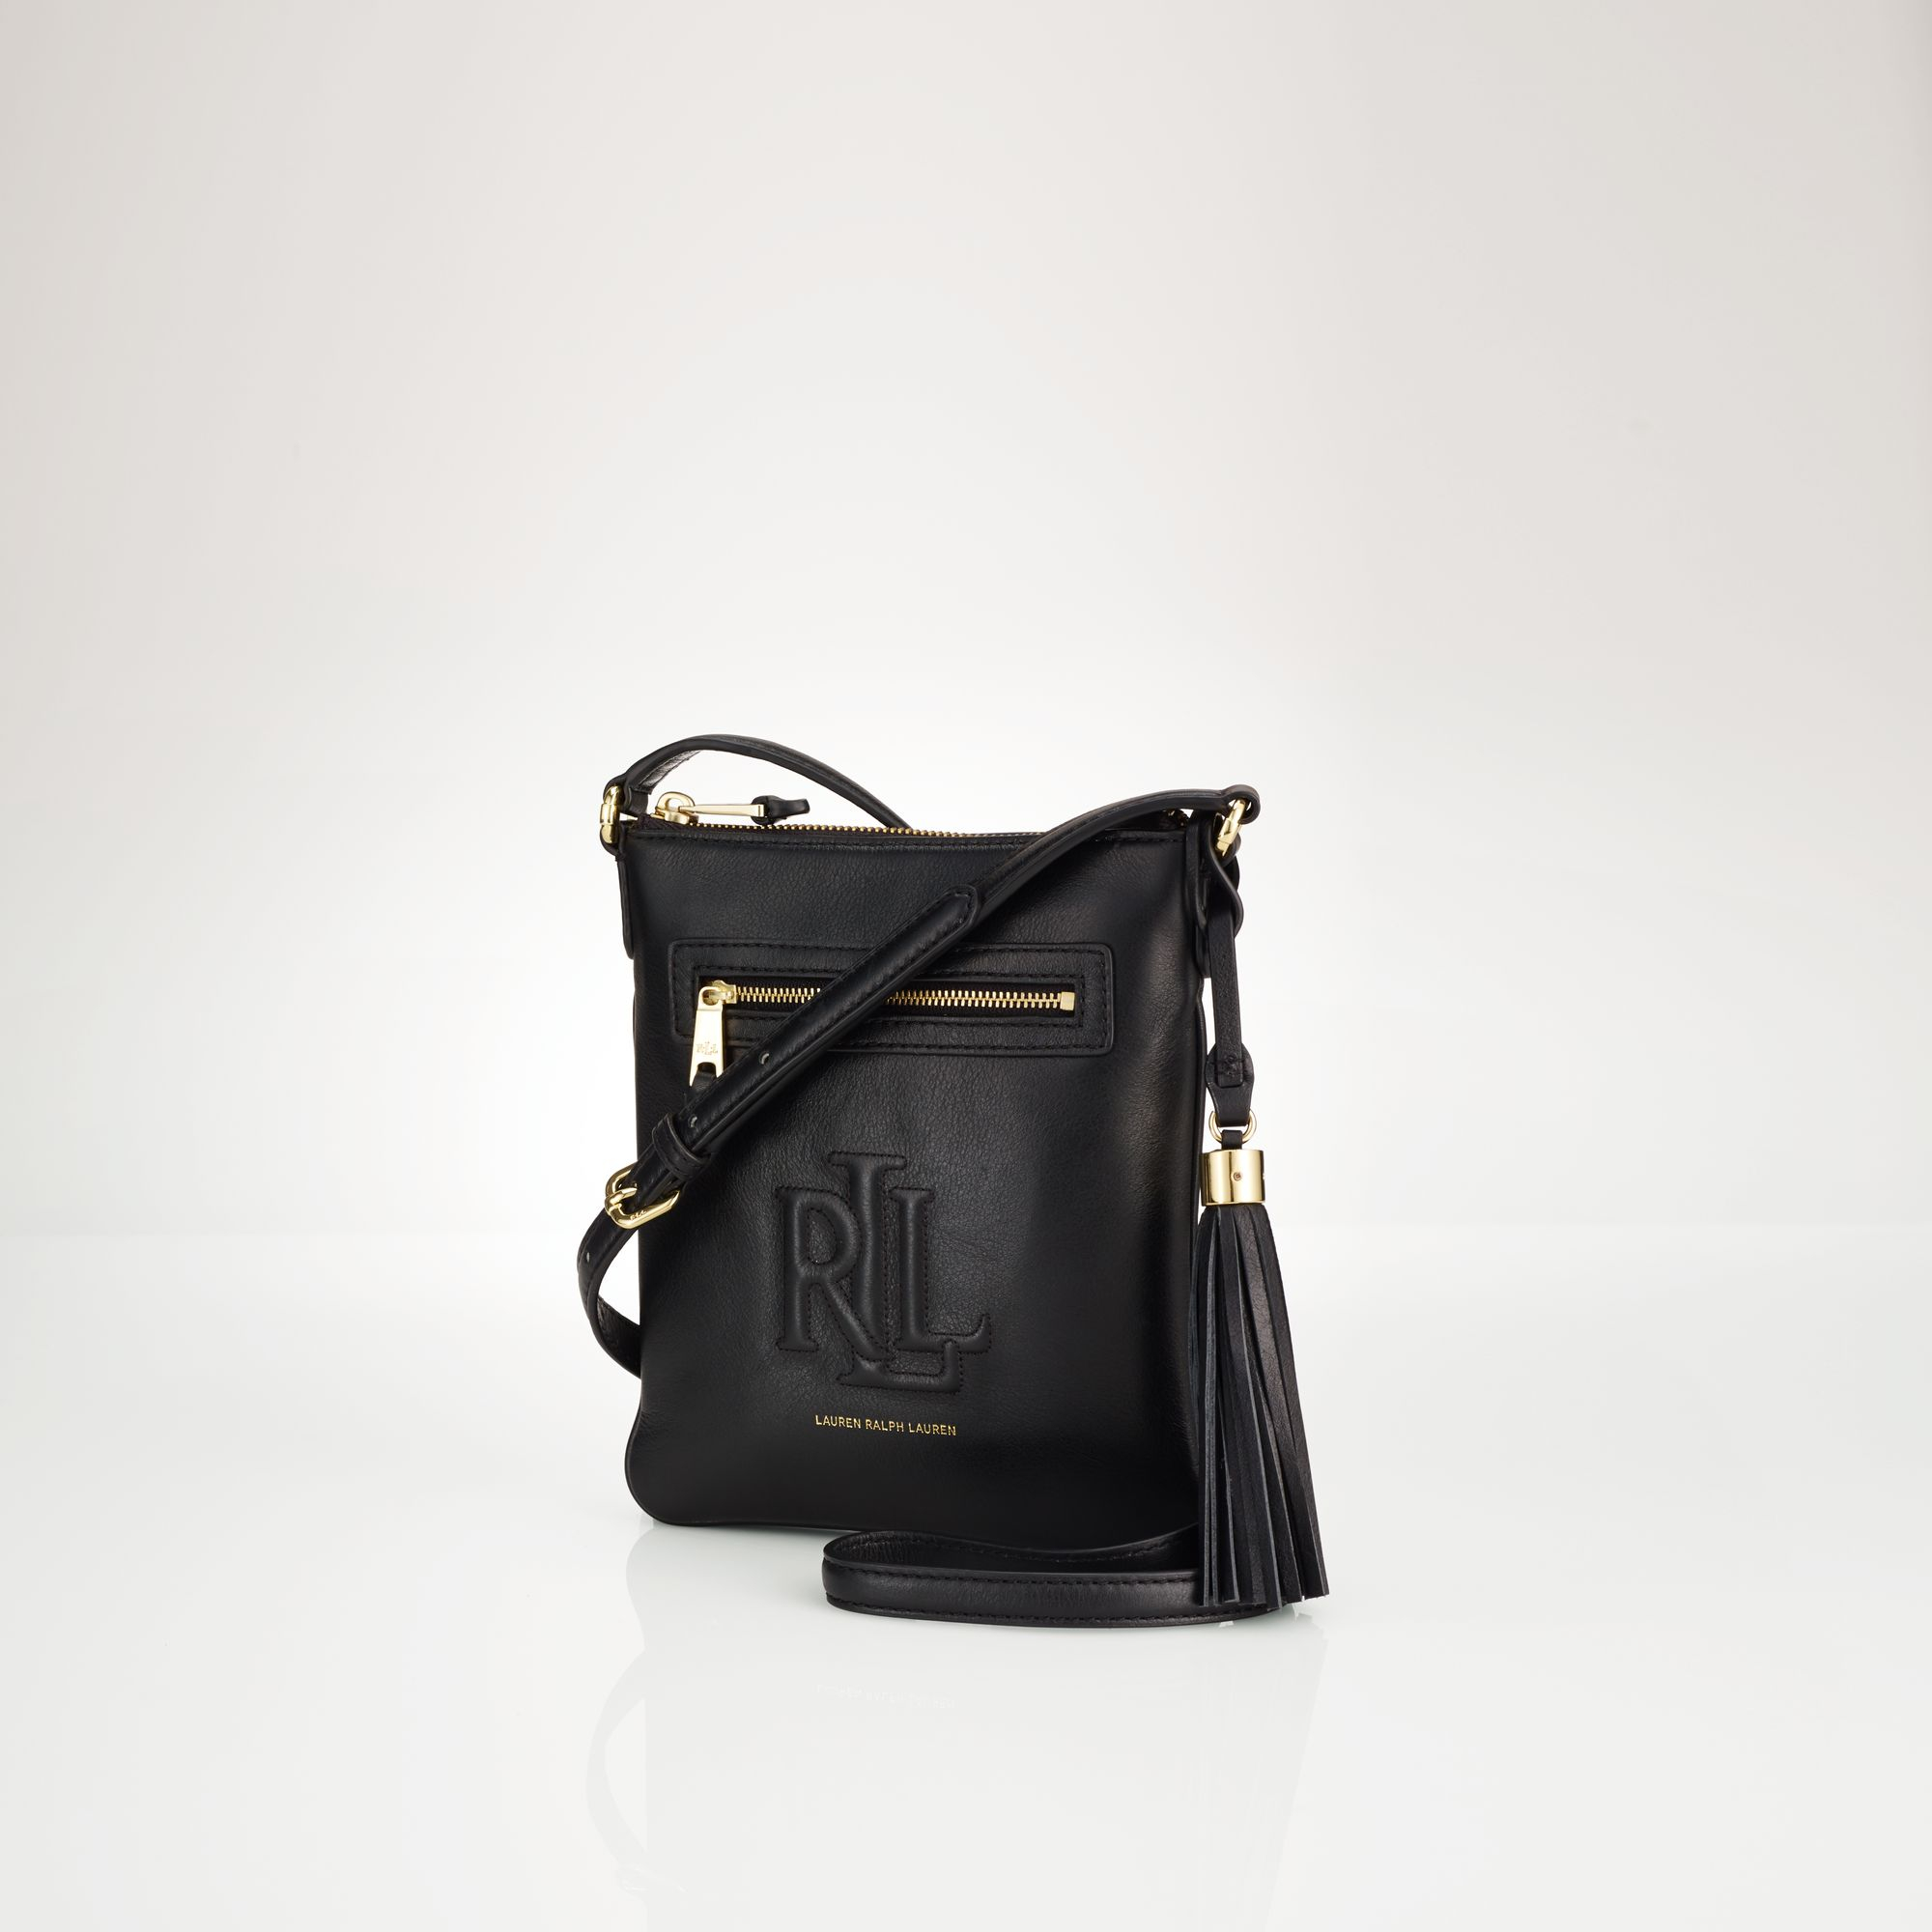 Lauren By Ralph Lauren Leather Cross-Body Bag in Black